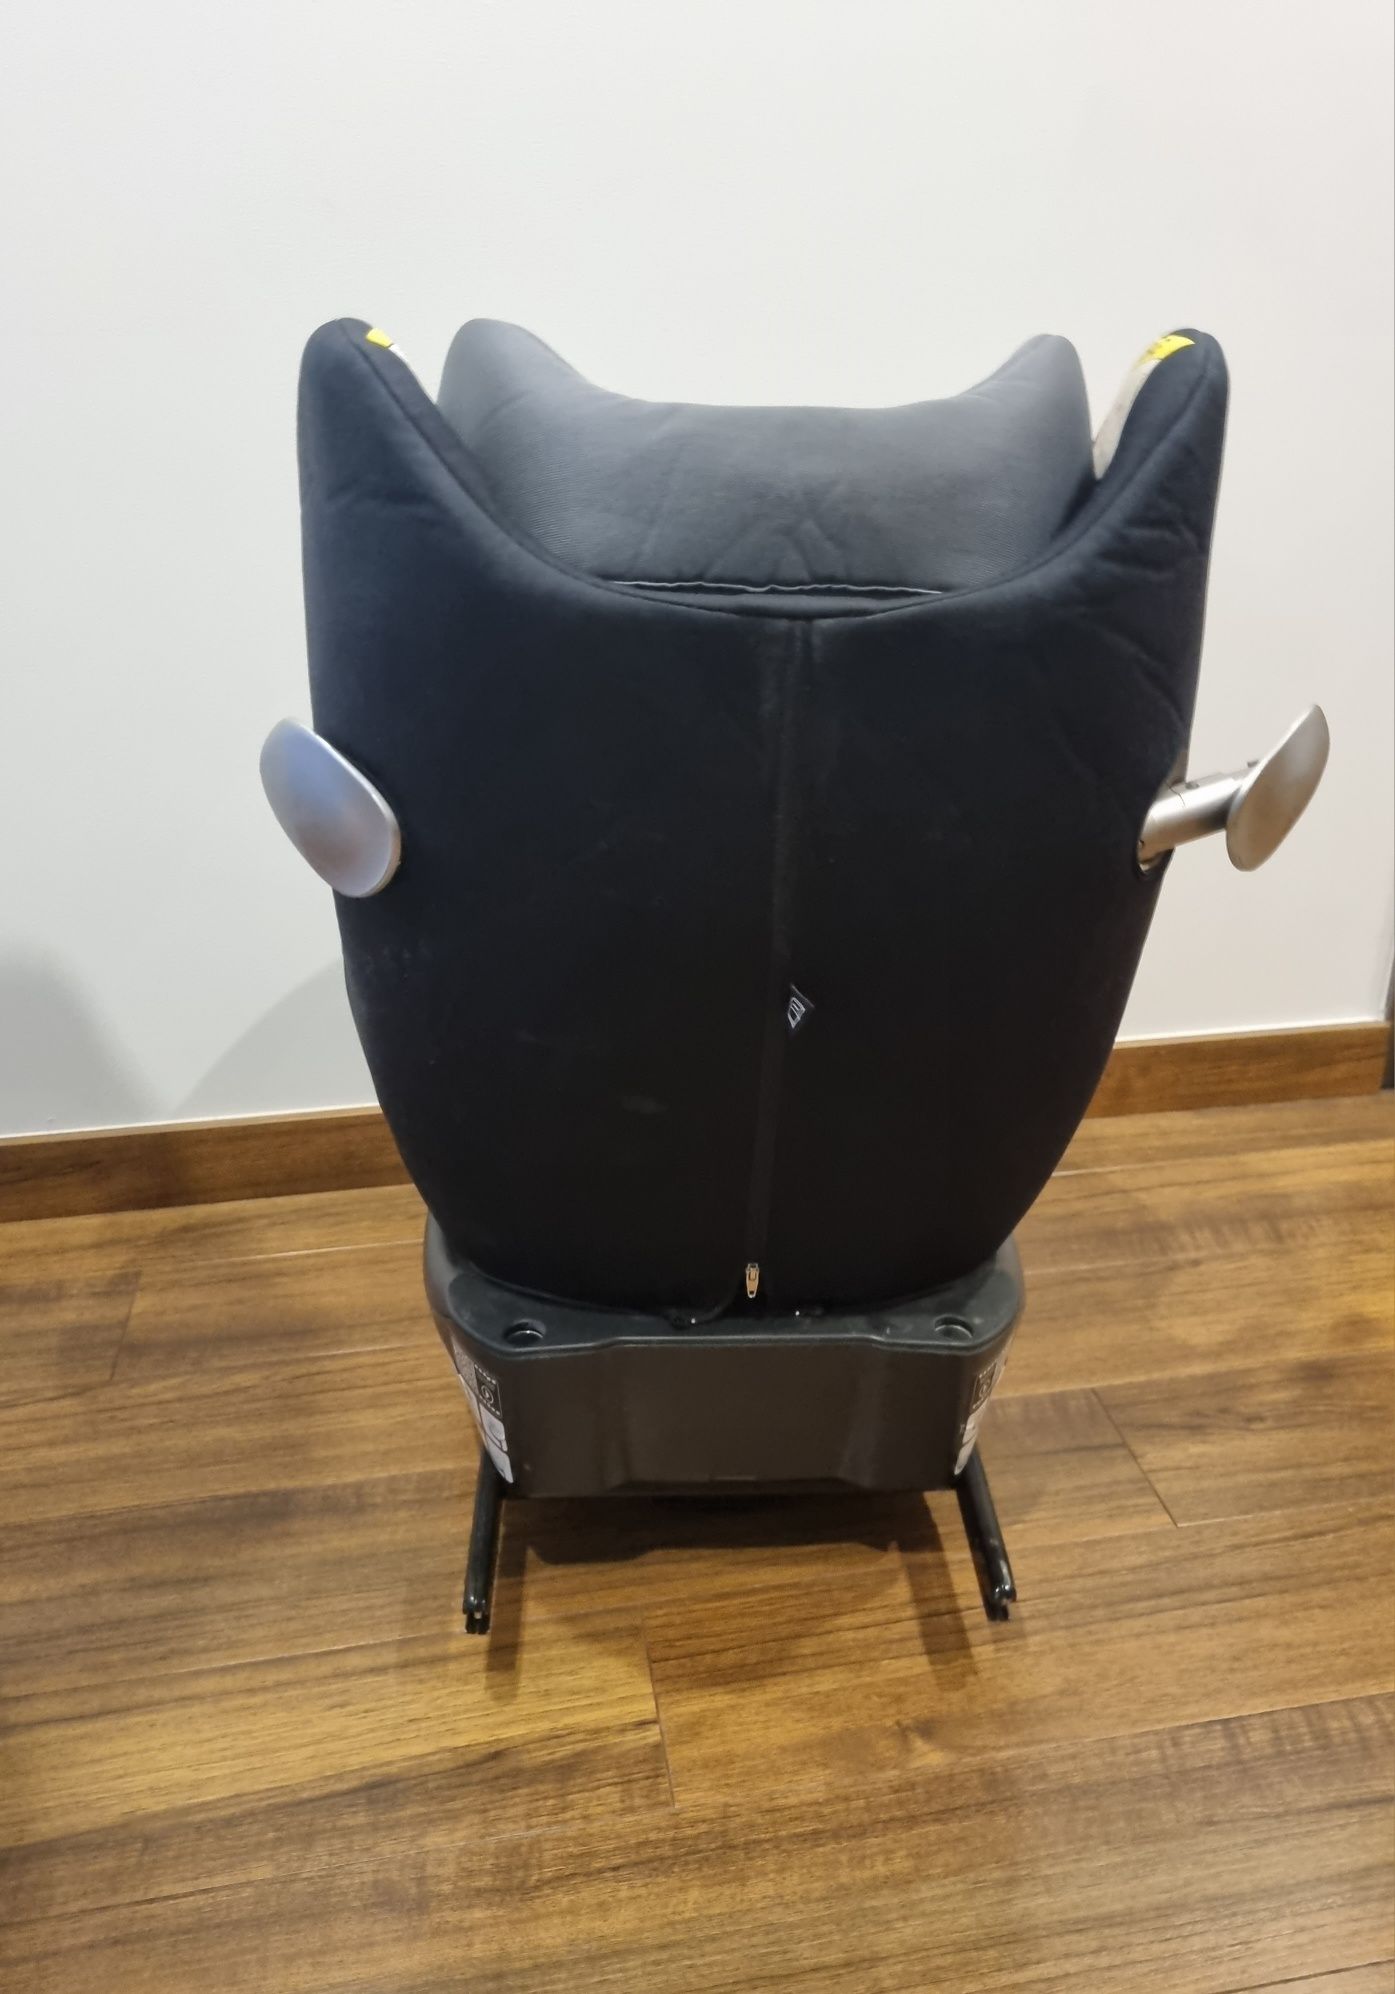 Cadeira Auto Cybex Sirona Rotativa (0-18kg)